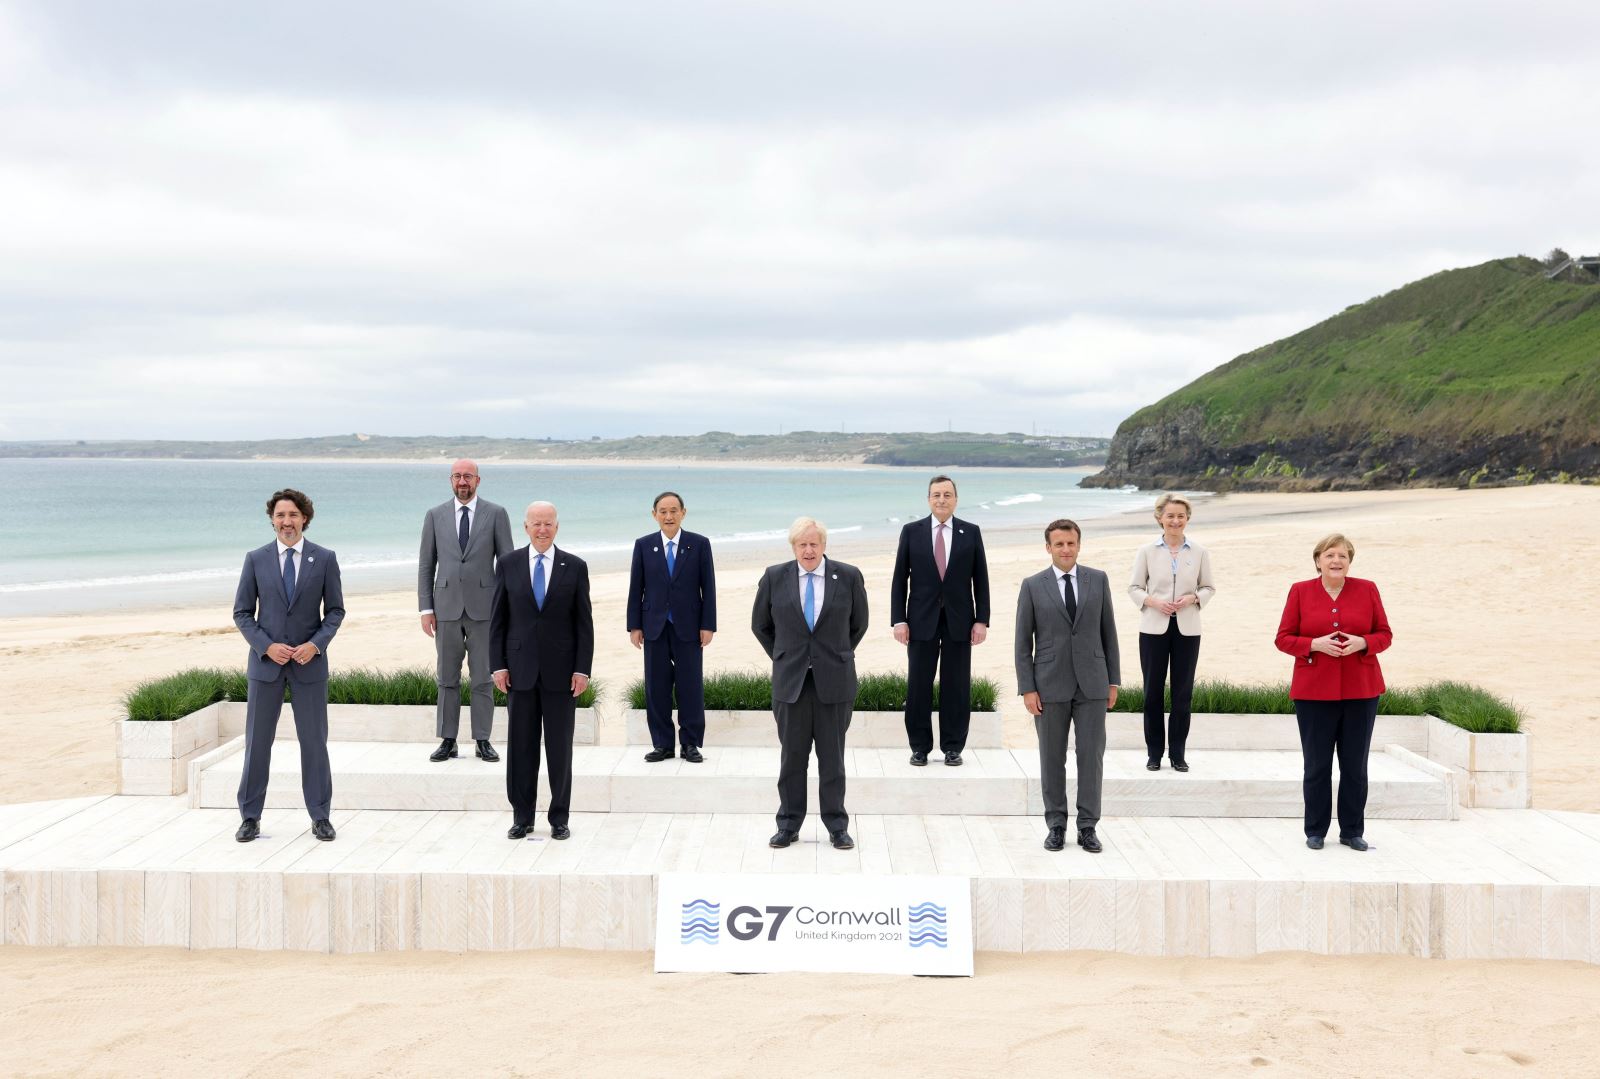 Thế giới tuần qua: G7 tìm kiếm tiếng nói chung; Mỹ-Trung tiếp tục vòng xoáy căng thẳng